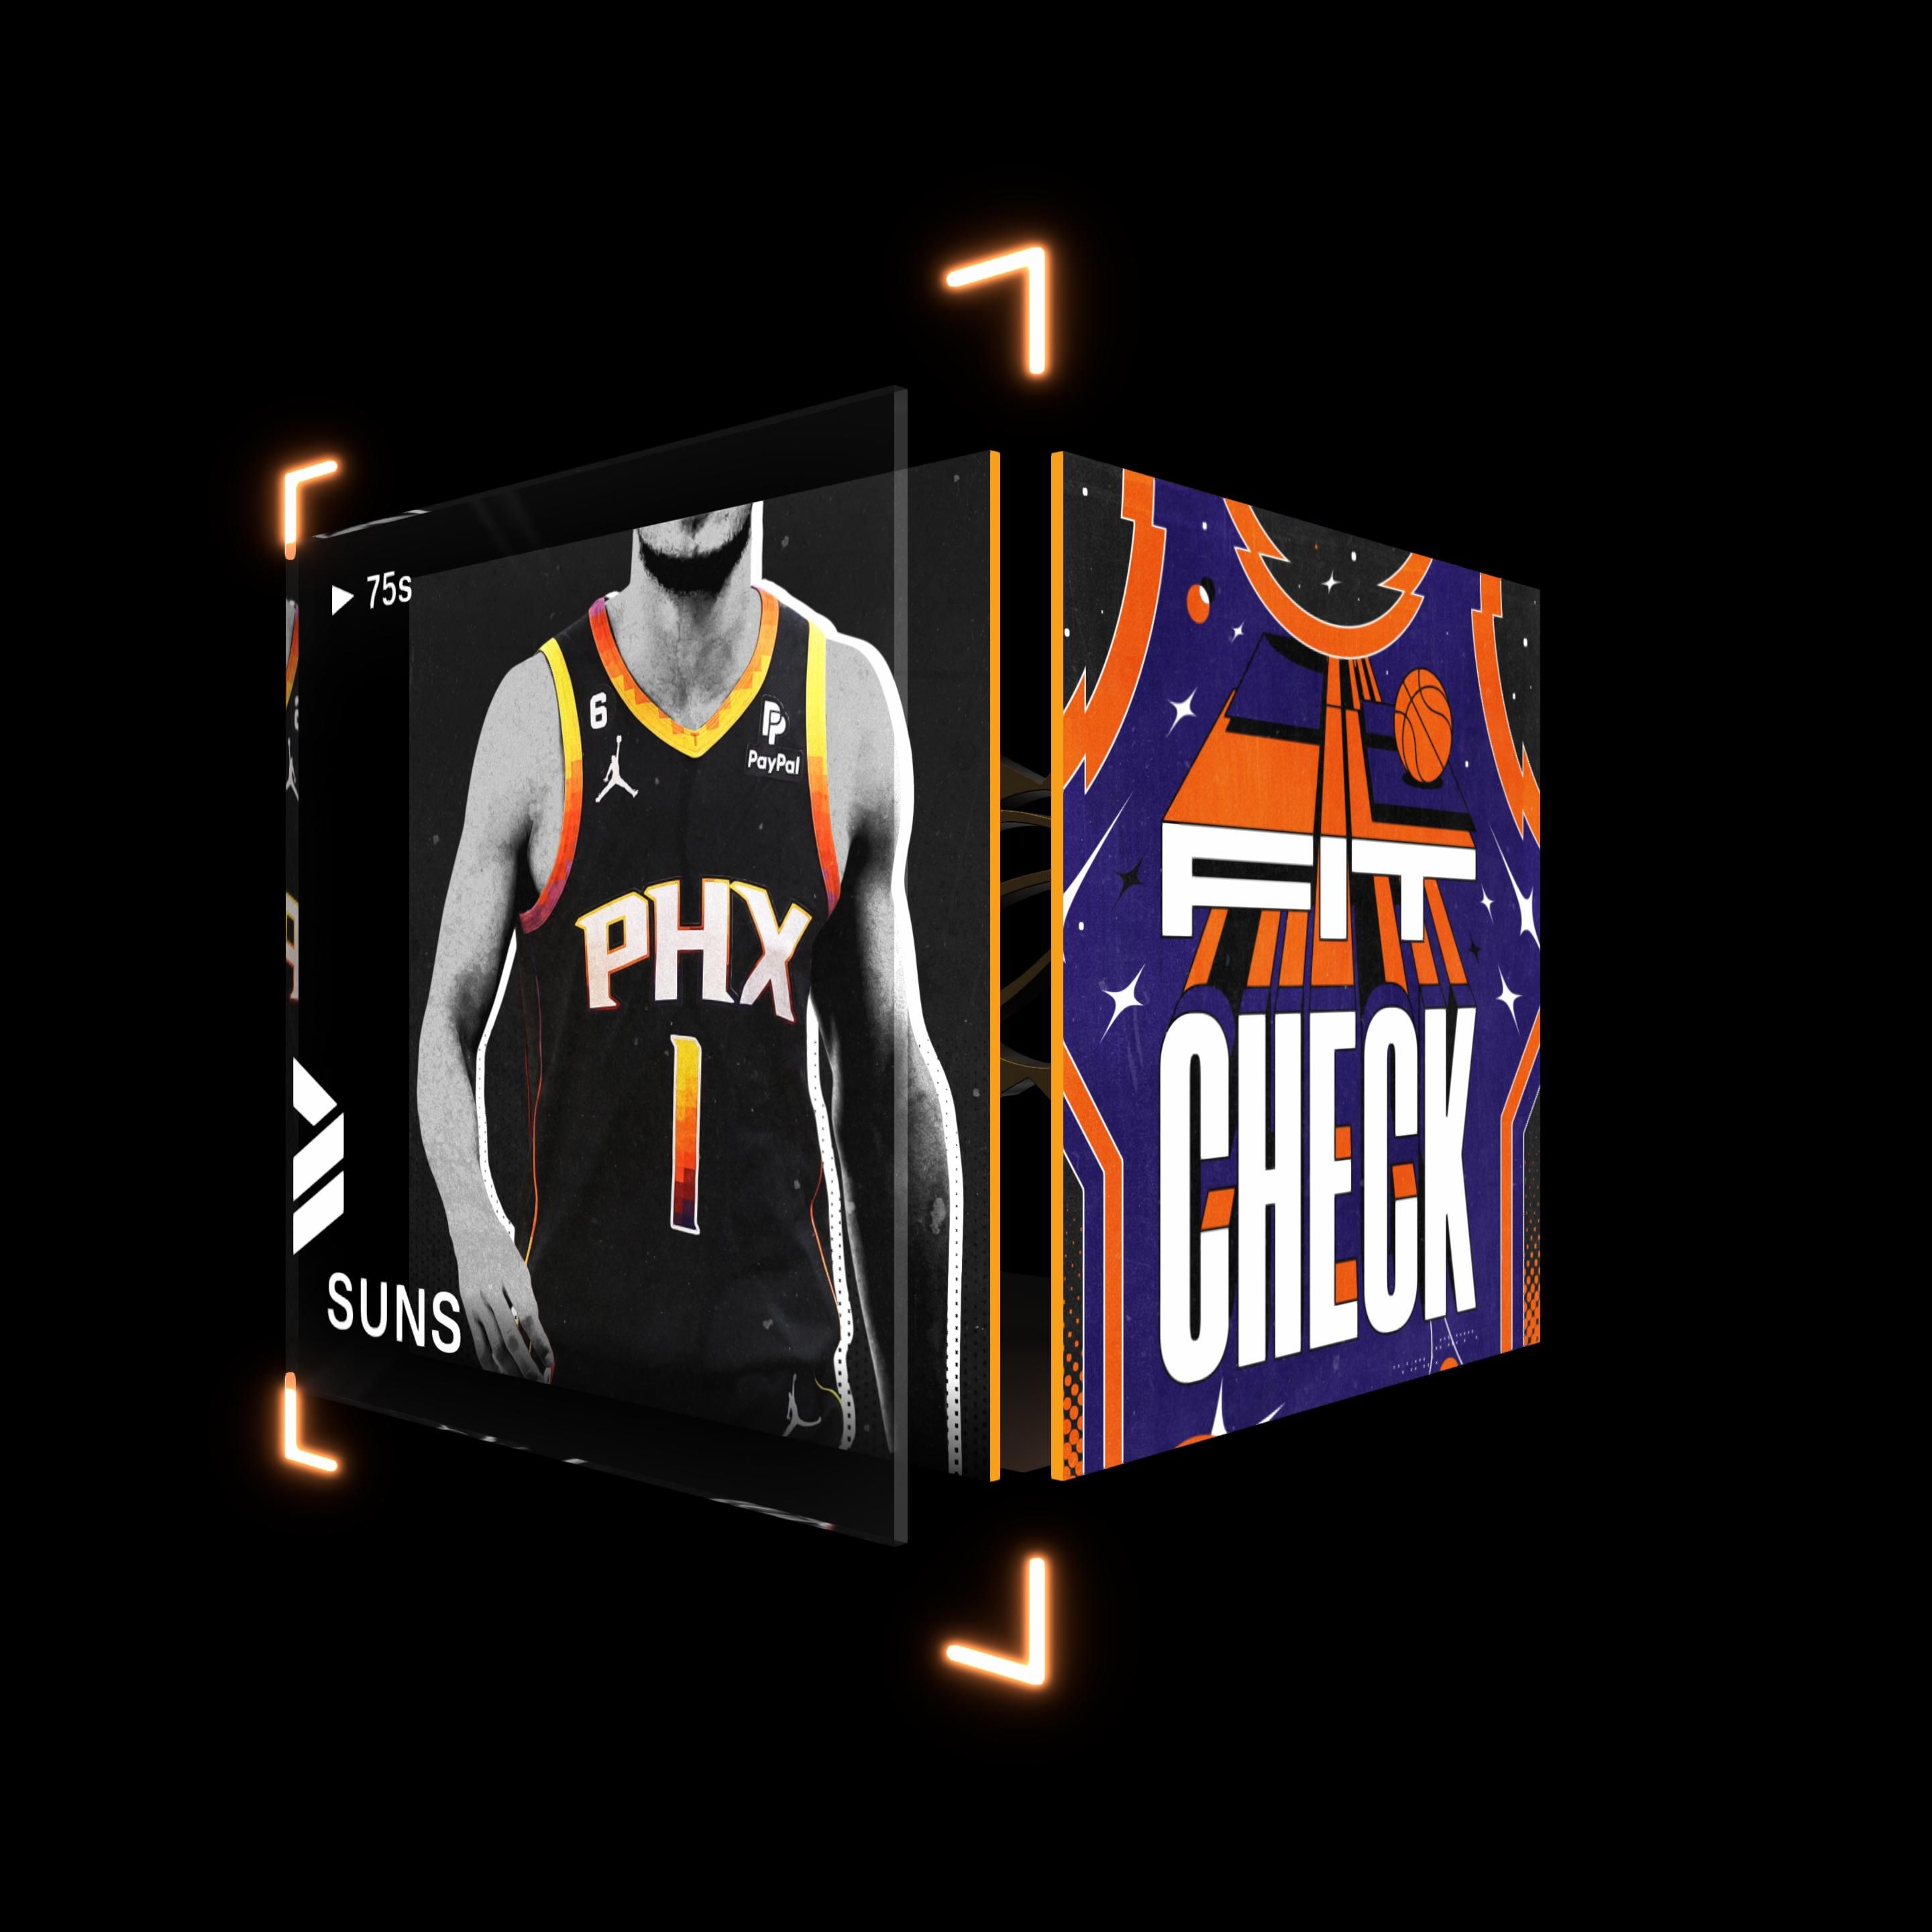 Phoenix Suns NBA Jerseys, Phoenix Suns Basketball Jerseys